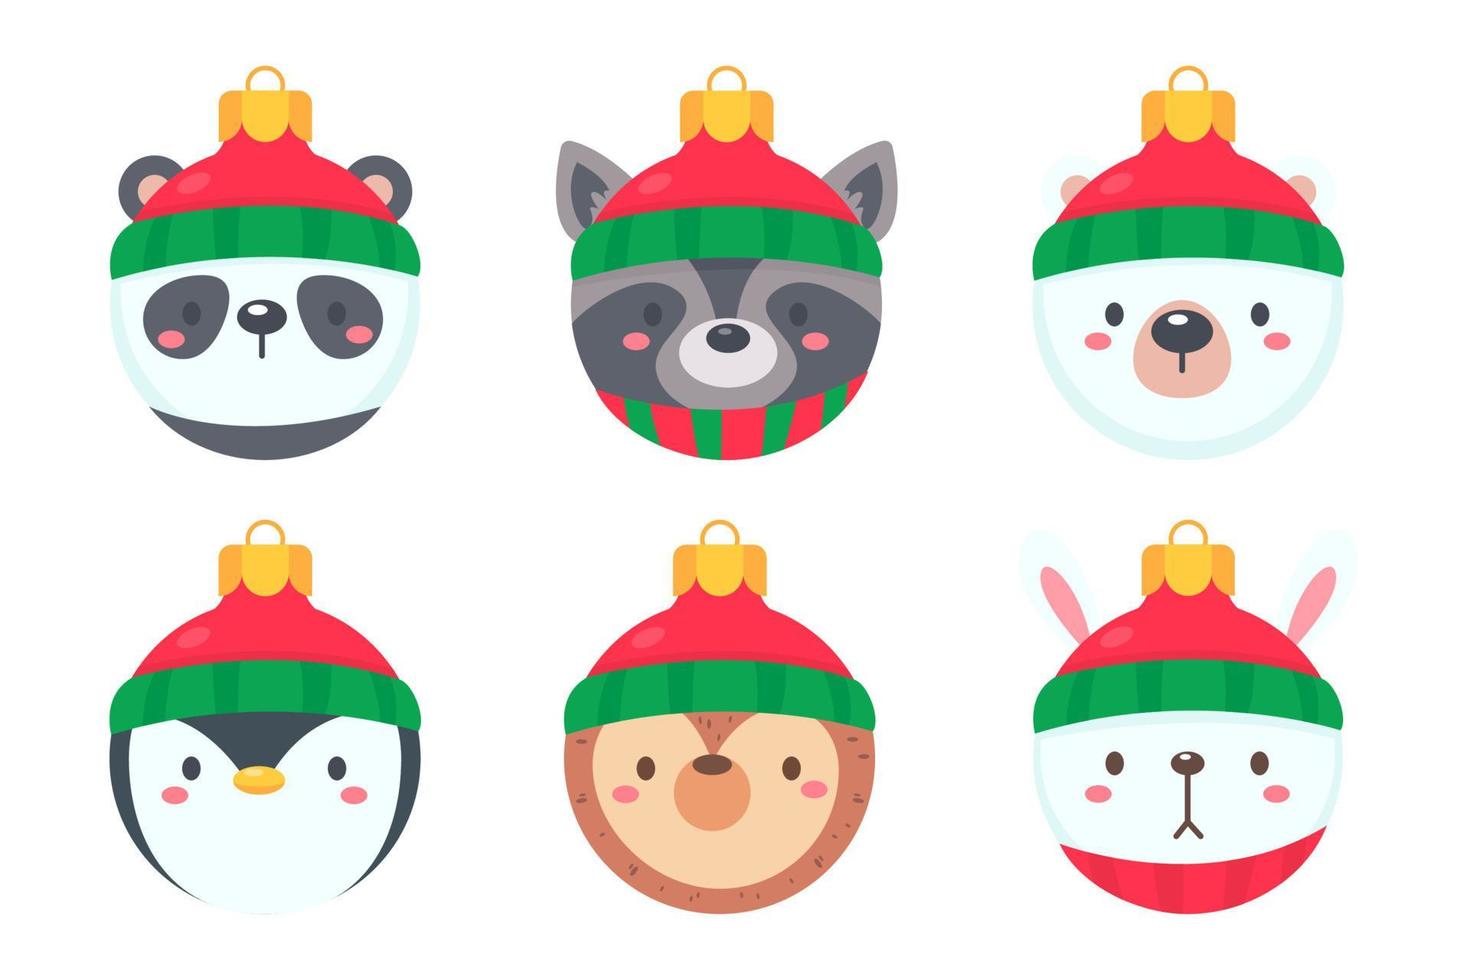 kerstbal met dierengezicht met een rode wollen muts voor decoratie op kerstmis vector